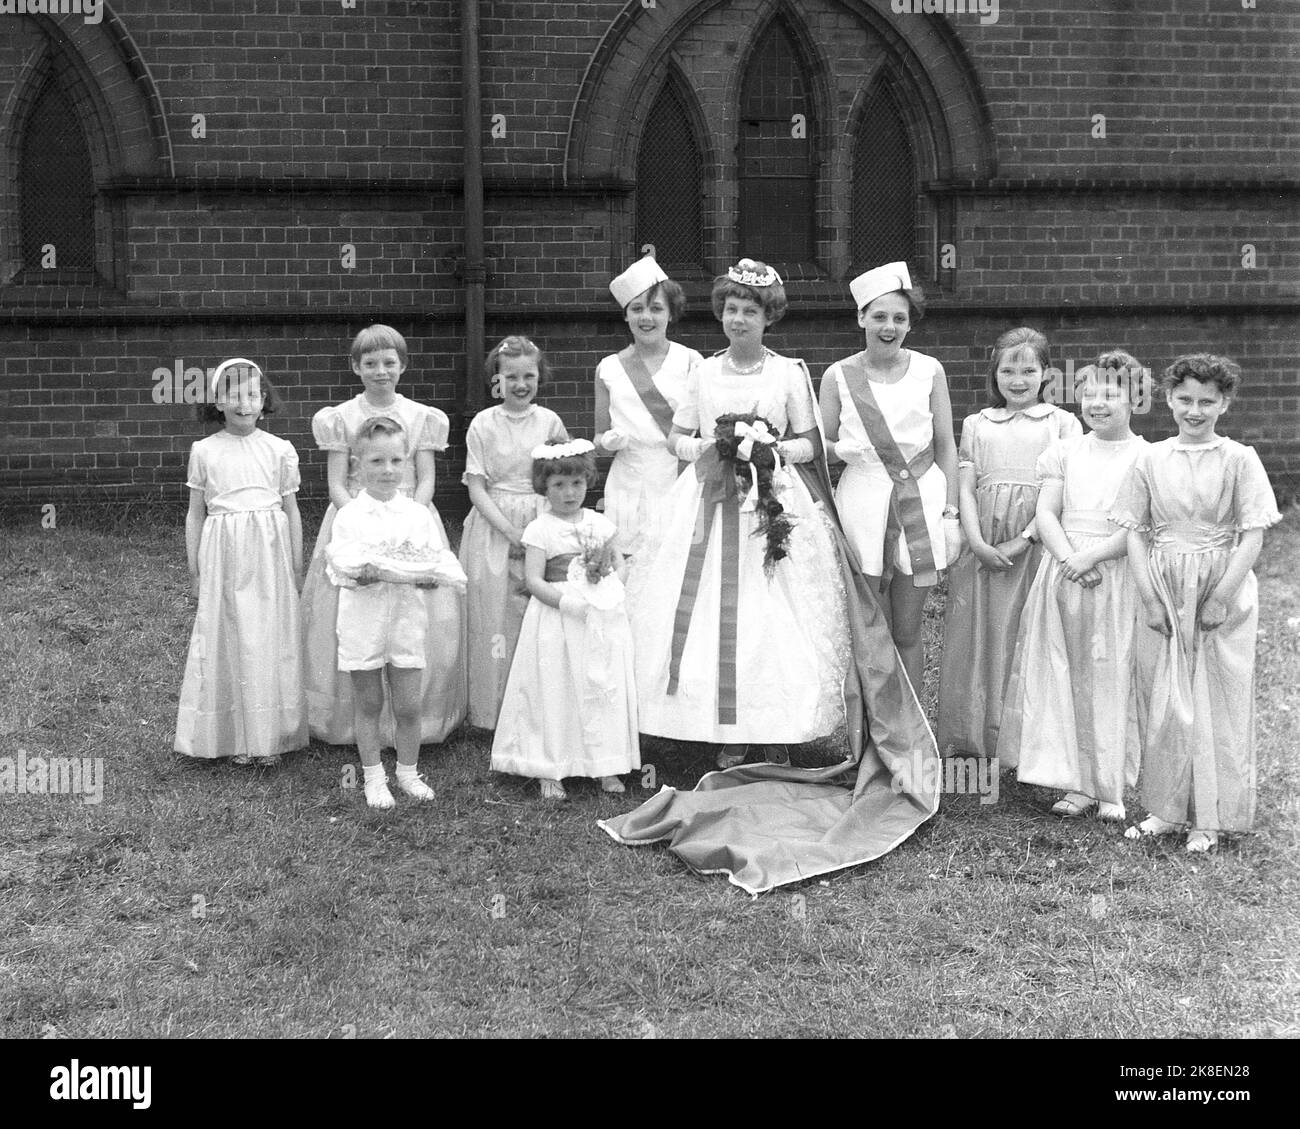 1962, historique, le jour de mai, à l'extérieur dans le domaine d'une église et la Reine de mai de cette année, debout avec d'autres enfants dans leurs longues robes pour le festival traditionnel qui célèbre l'été, Leeds, Angleterre, Royaume-Uni. Un petit garçon, le seul homme, tenant le coussin pour la couronne. Banque D'Images